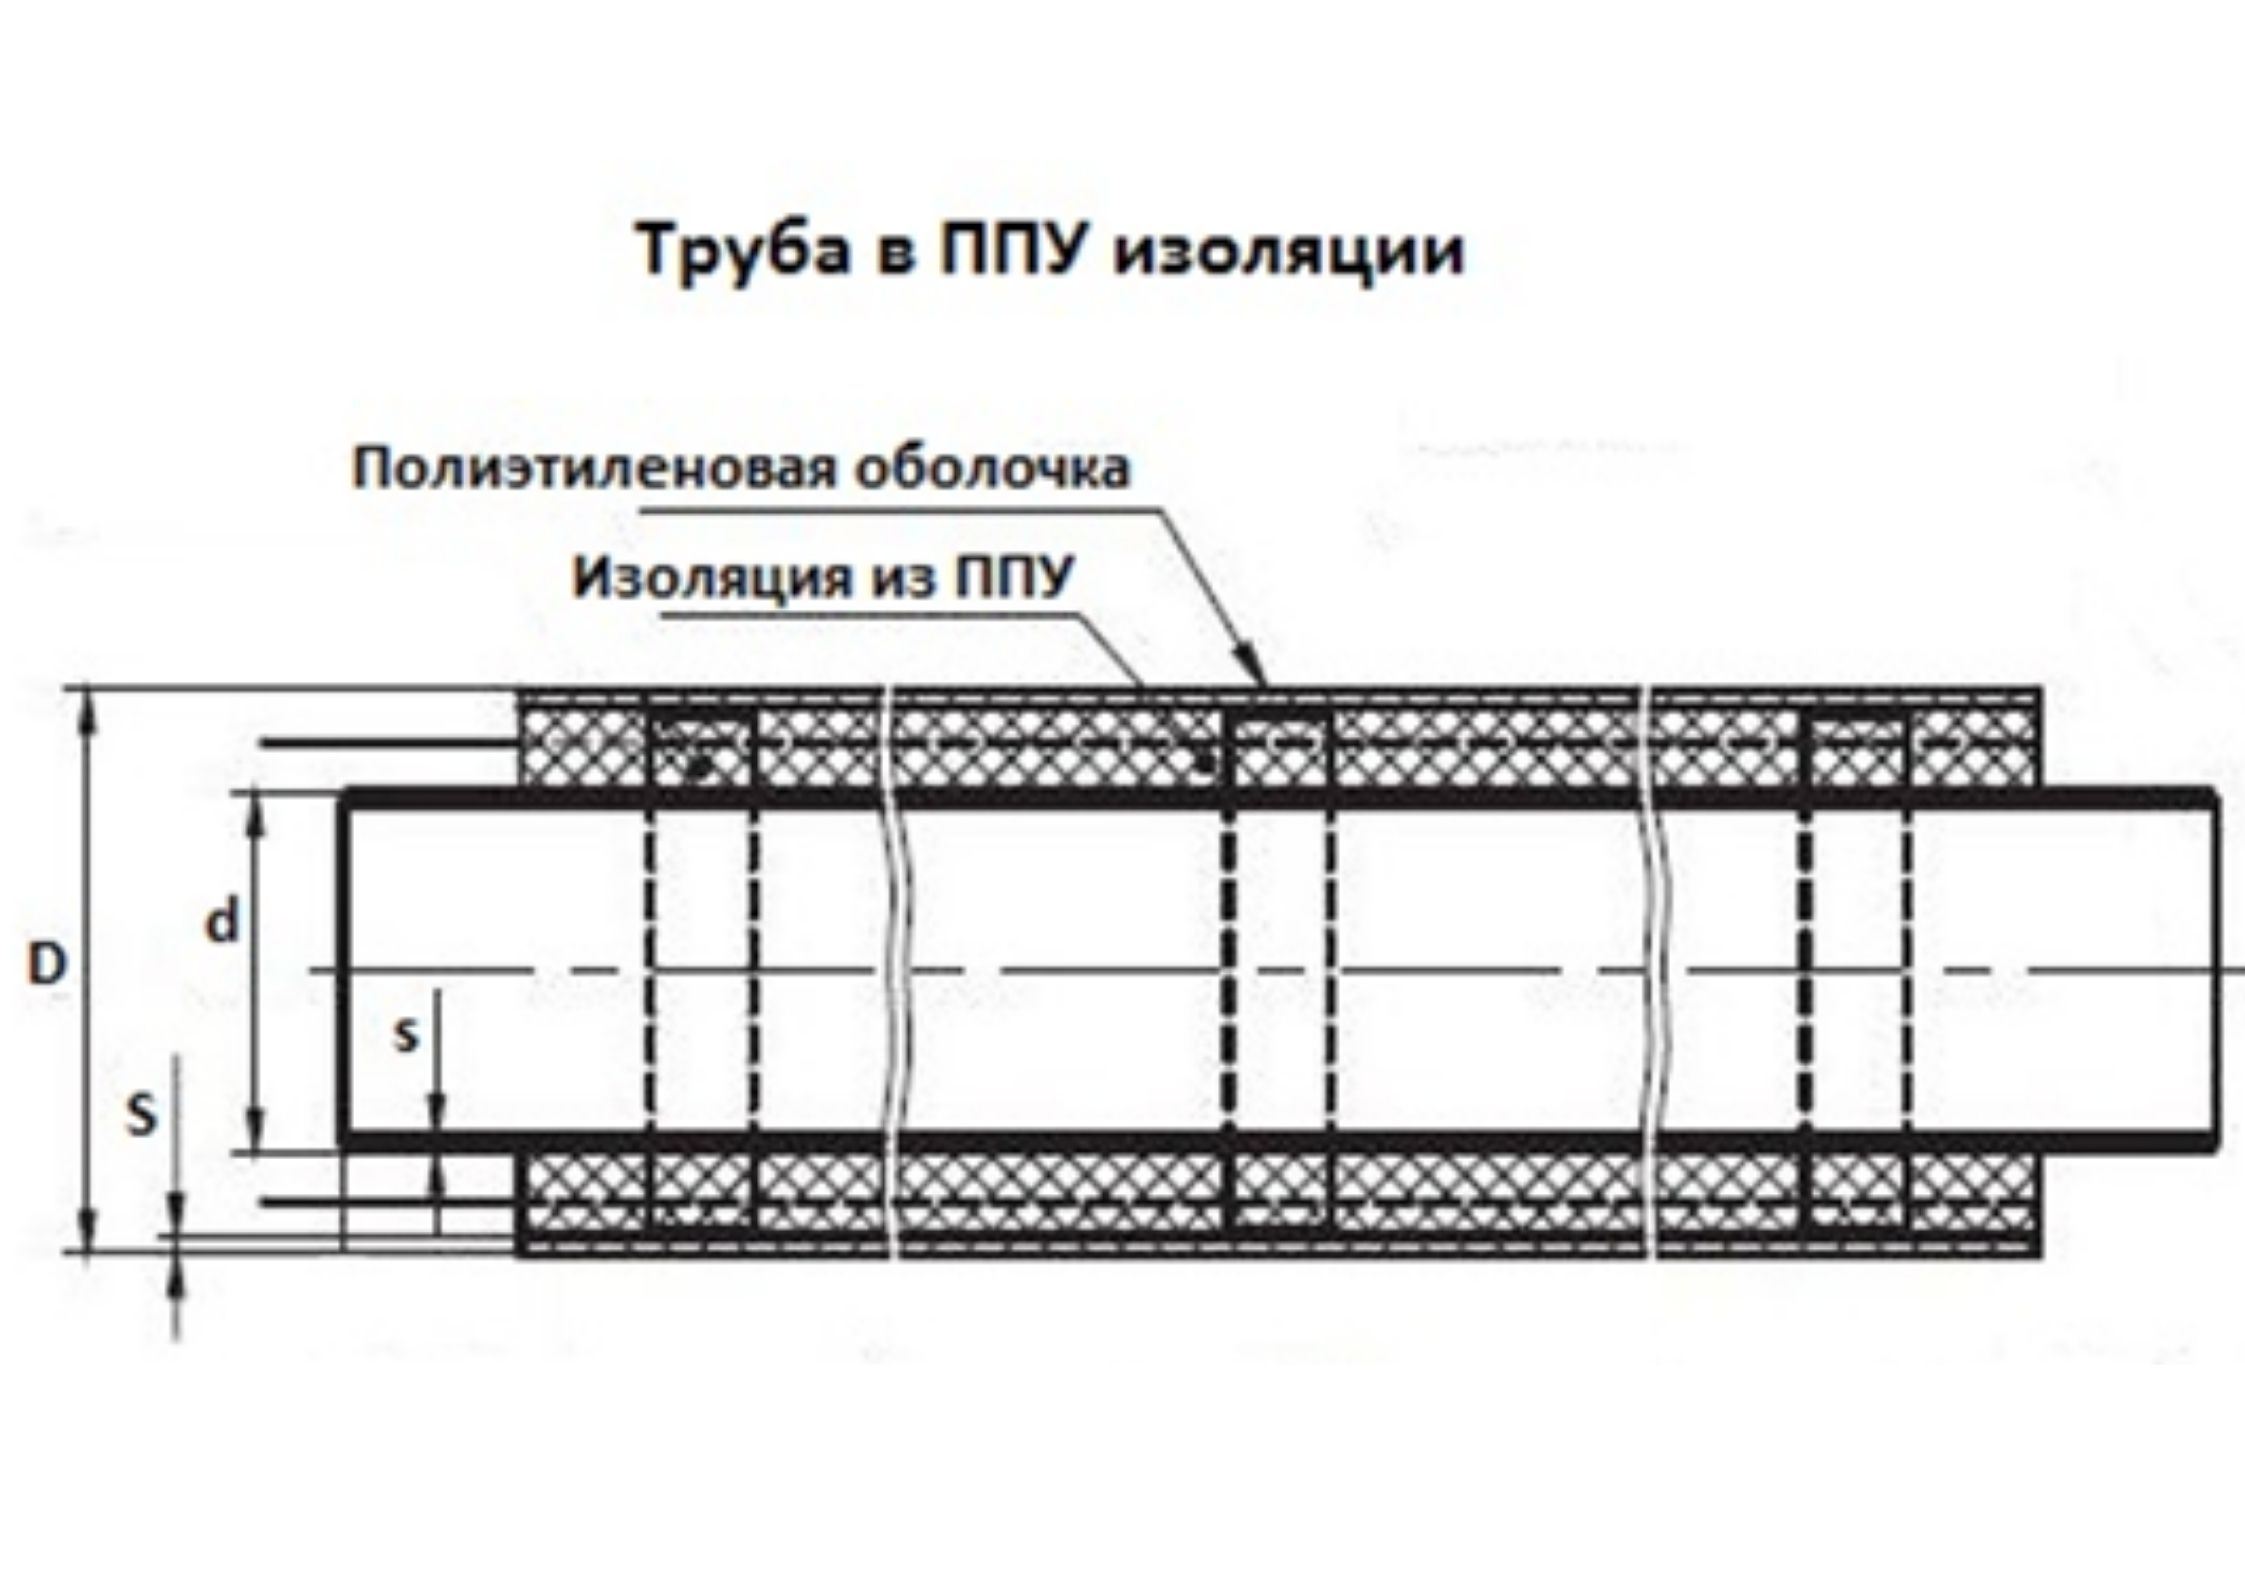 Трубы ППУ 25 в мм «Альфа-тех» в Москве